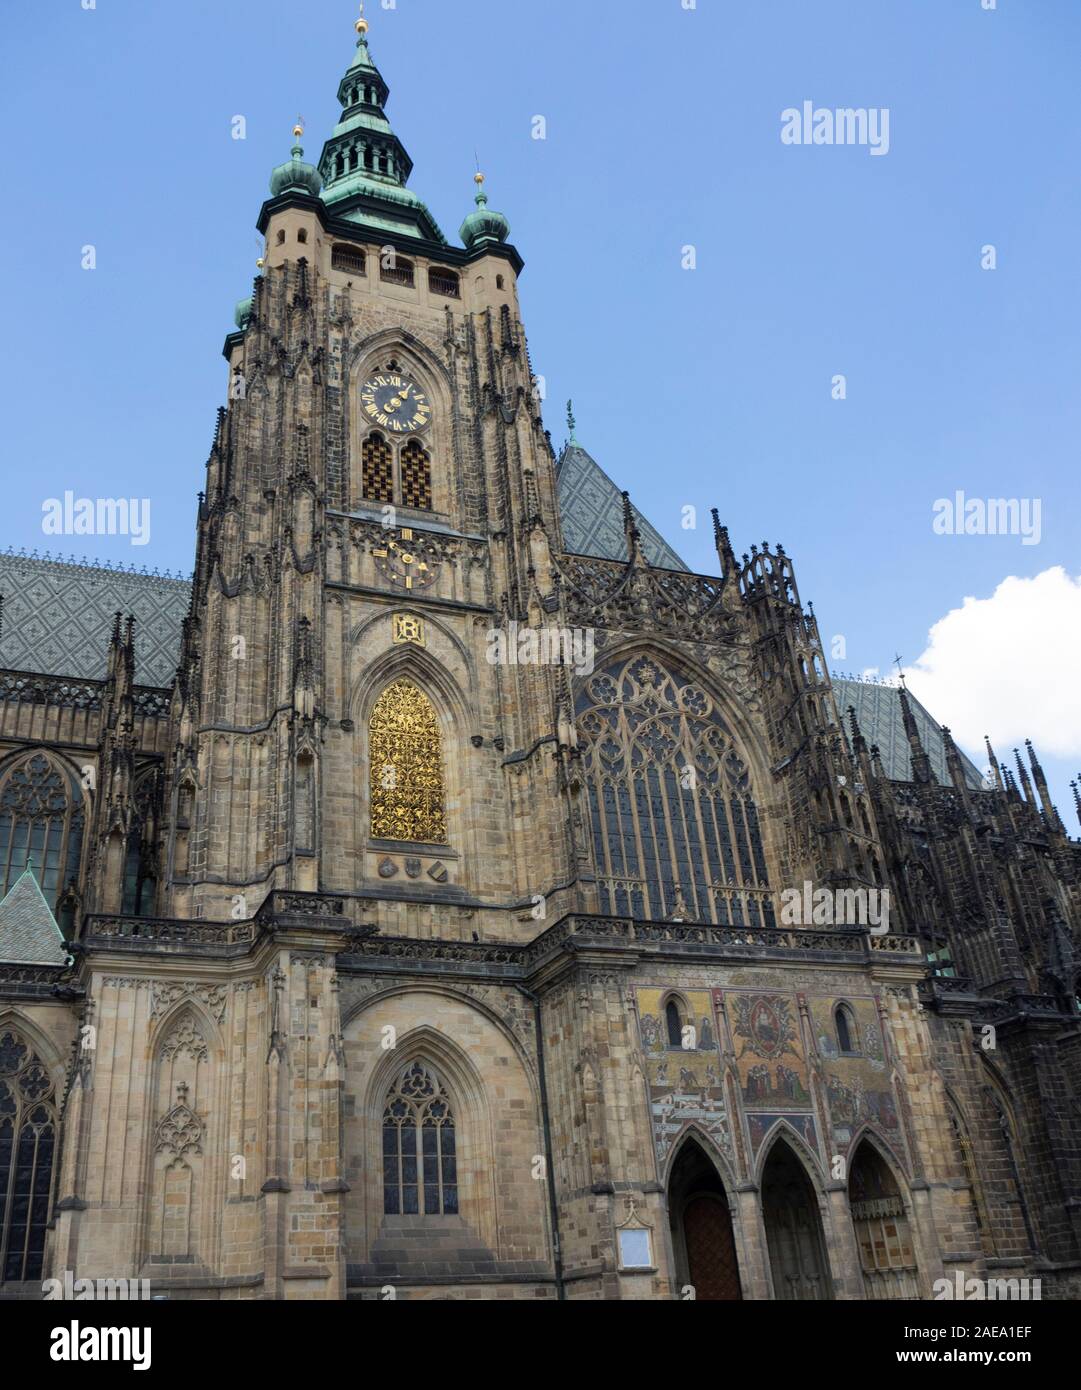 Grande tour sud de la cathédrale gothique St Vitus Château de Prague Prague République tchèque. Banque D'Images